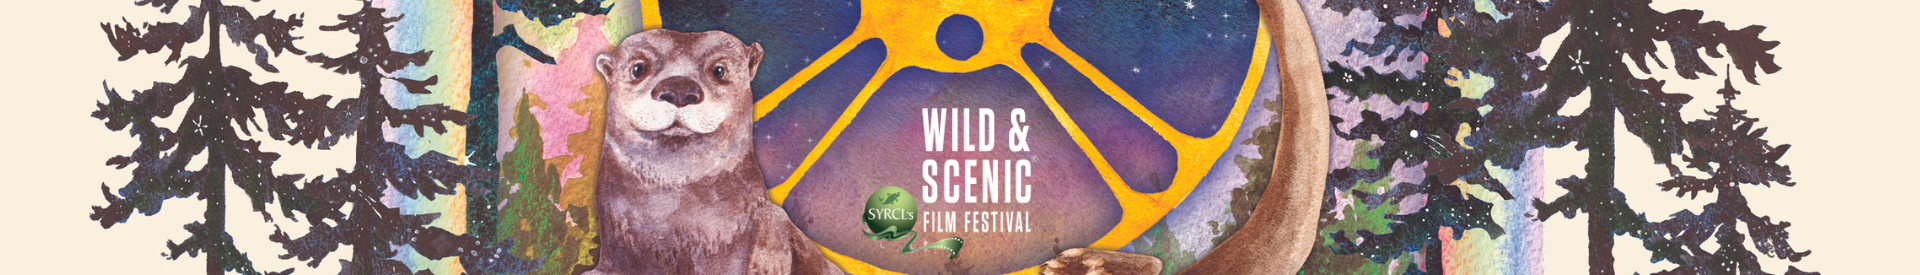 22nd annual Wild & Scenic Film Festival